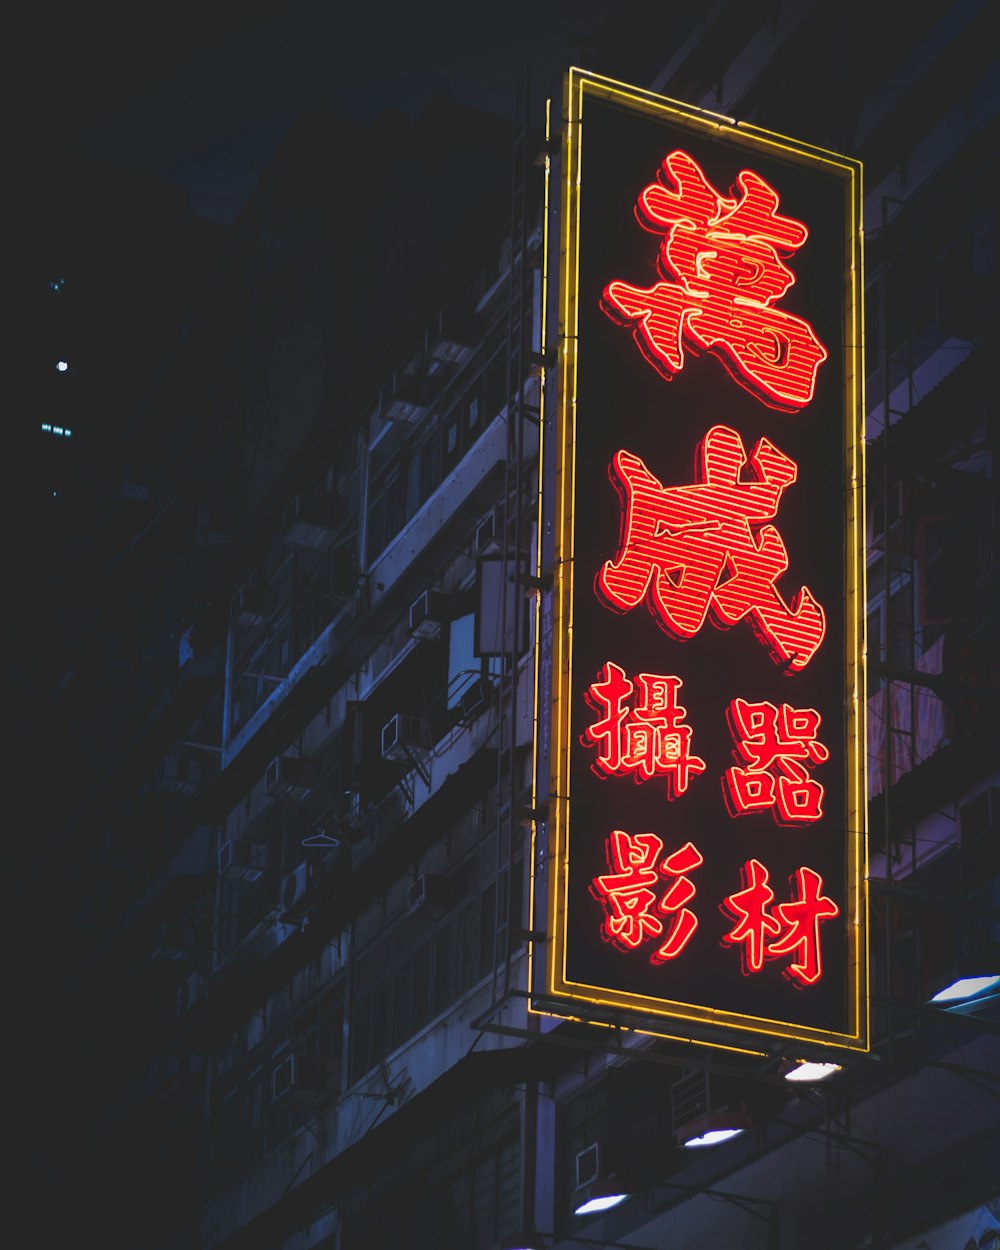 señalización en negro y rojo con texto en kanji